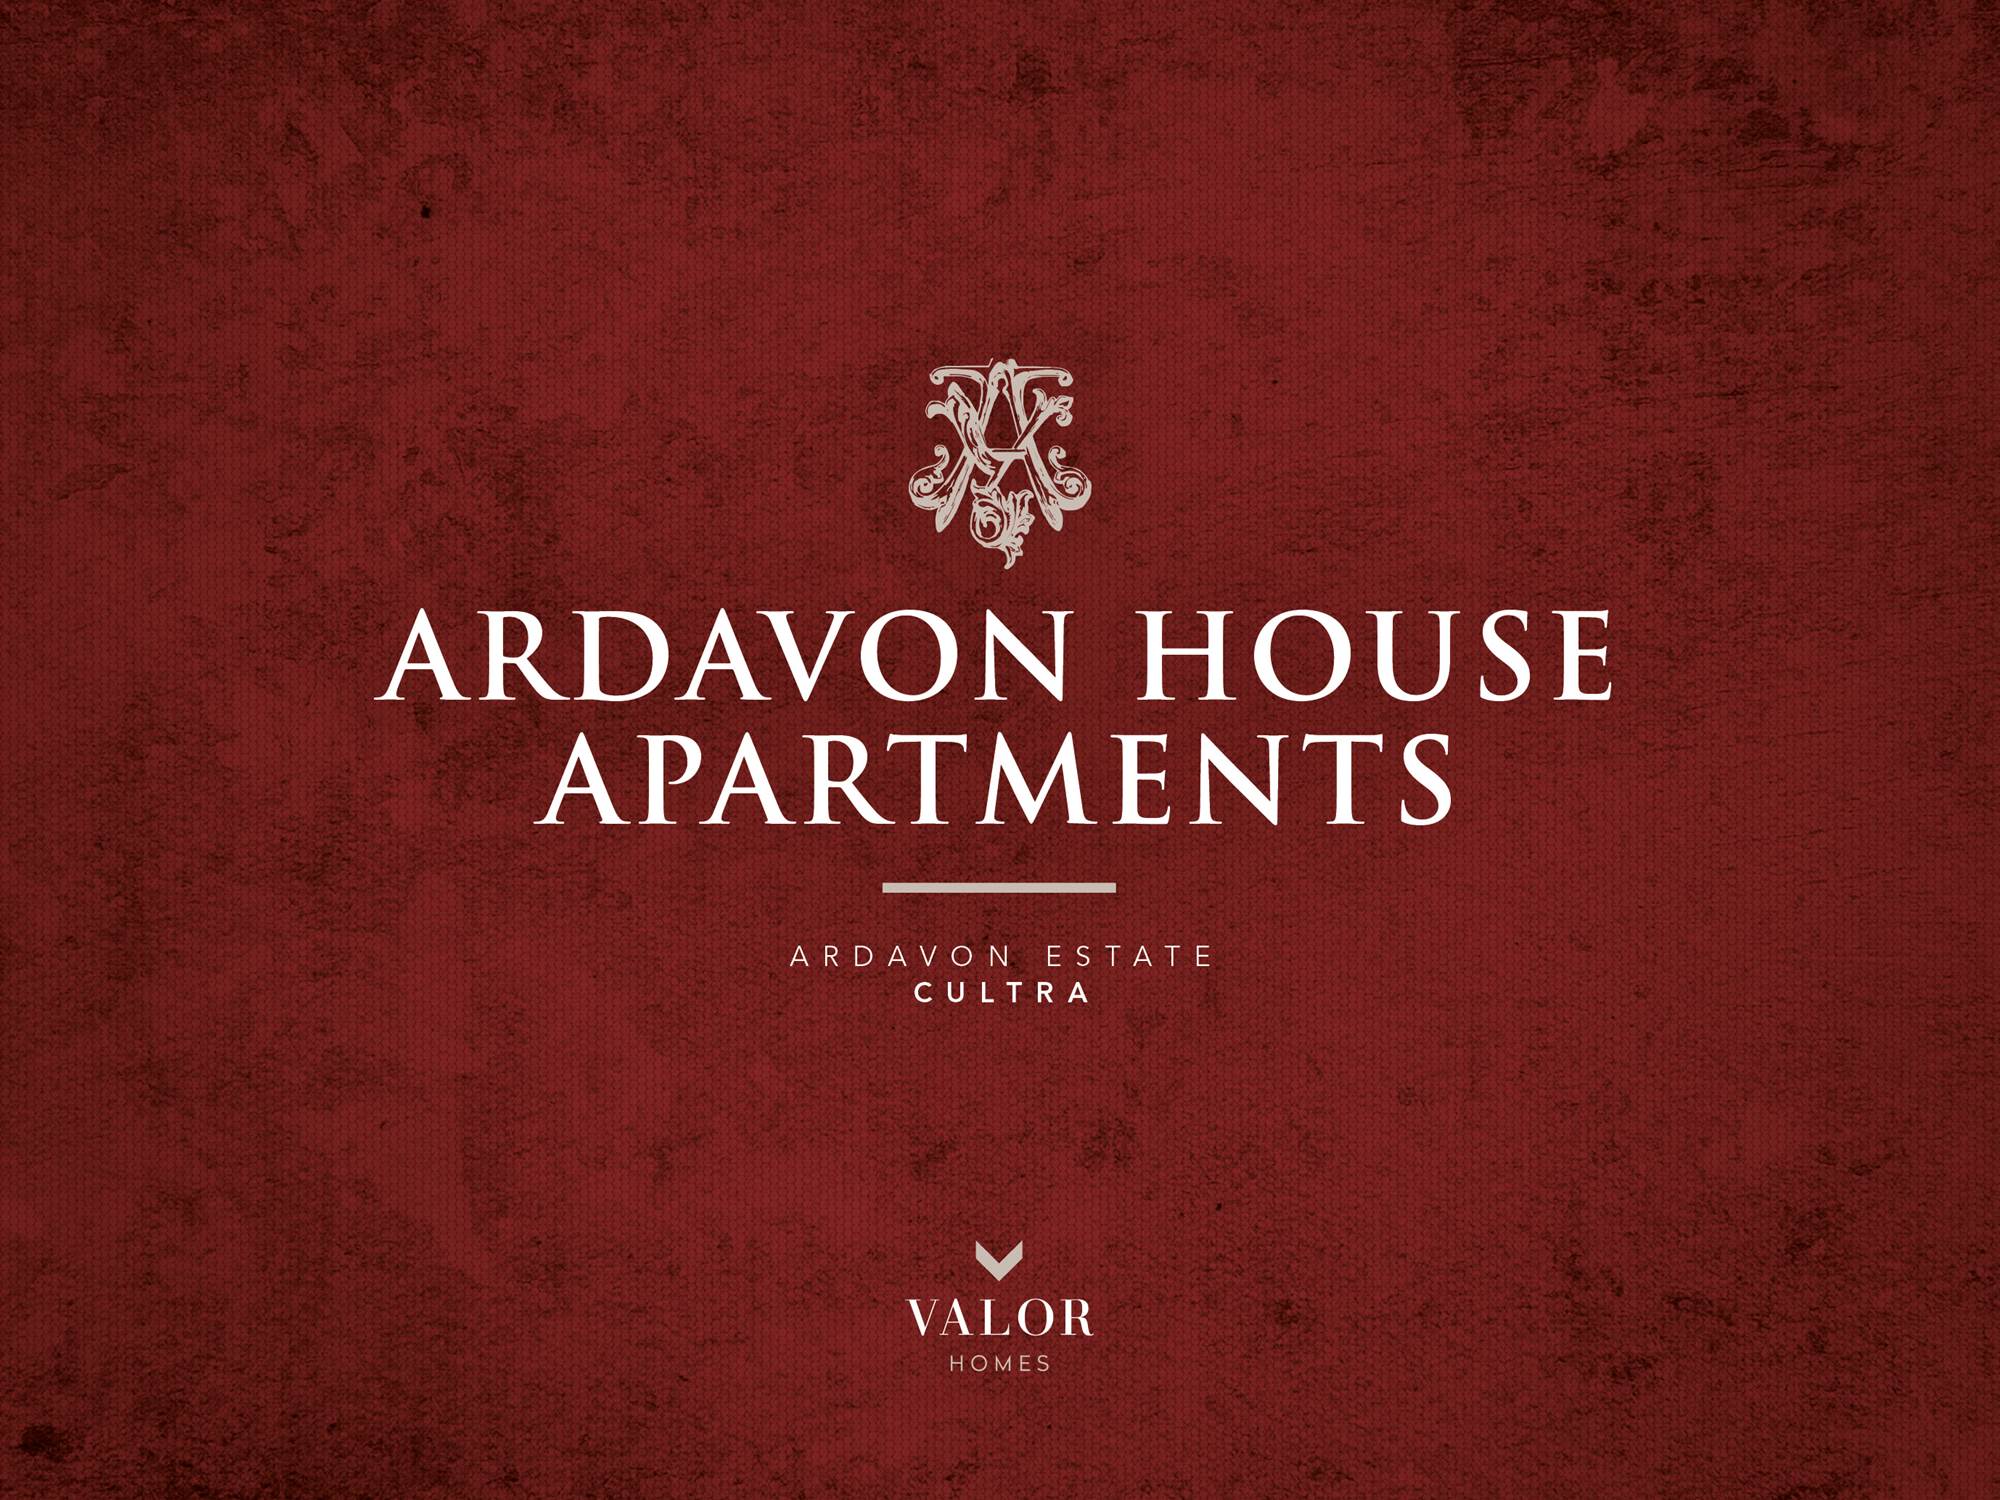 ARDAVON HOUSE APARTMENTS